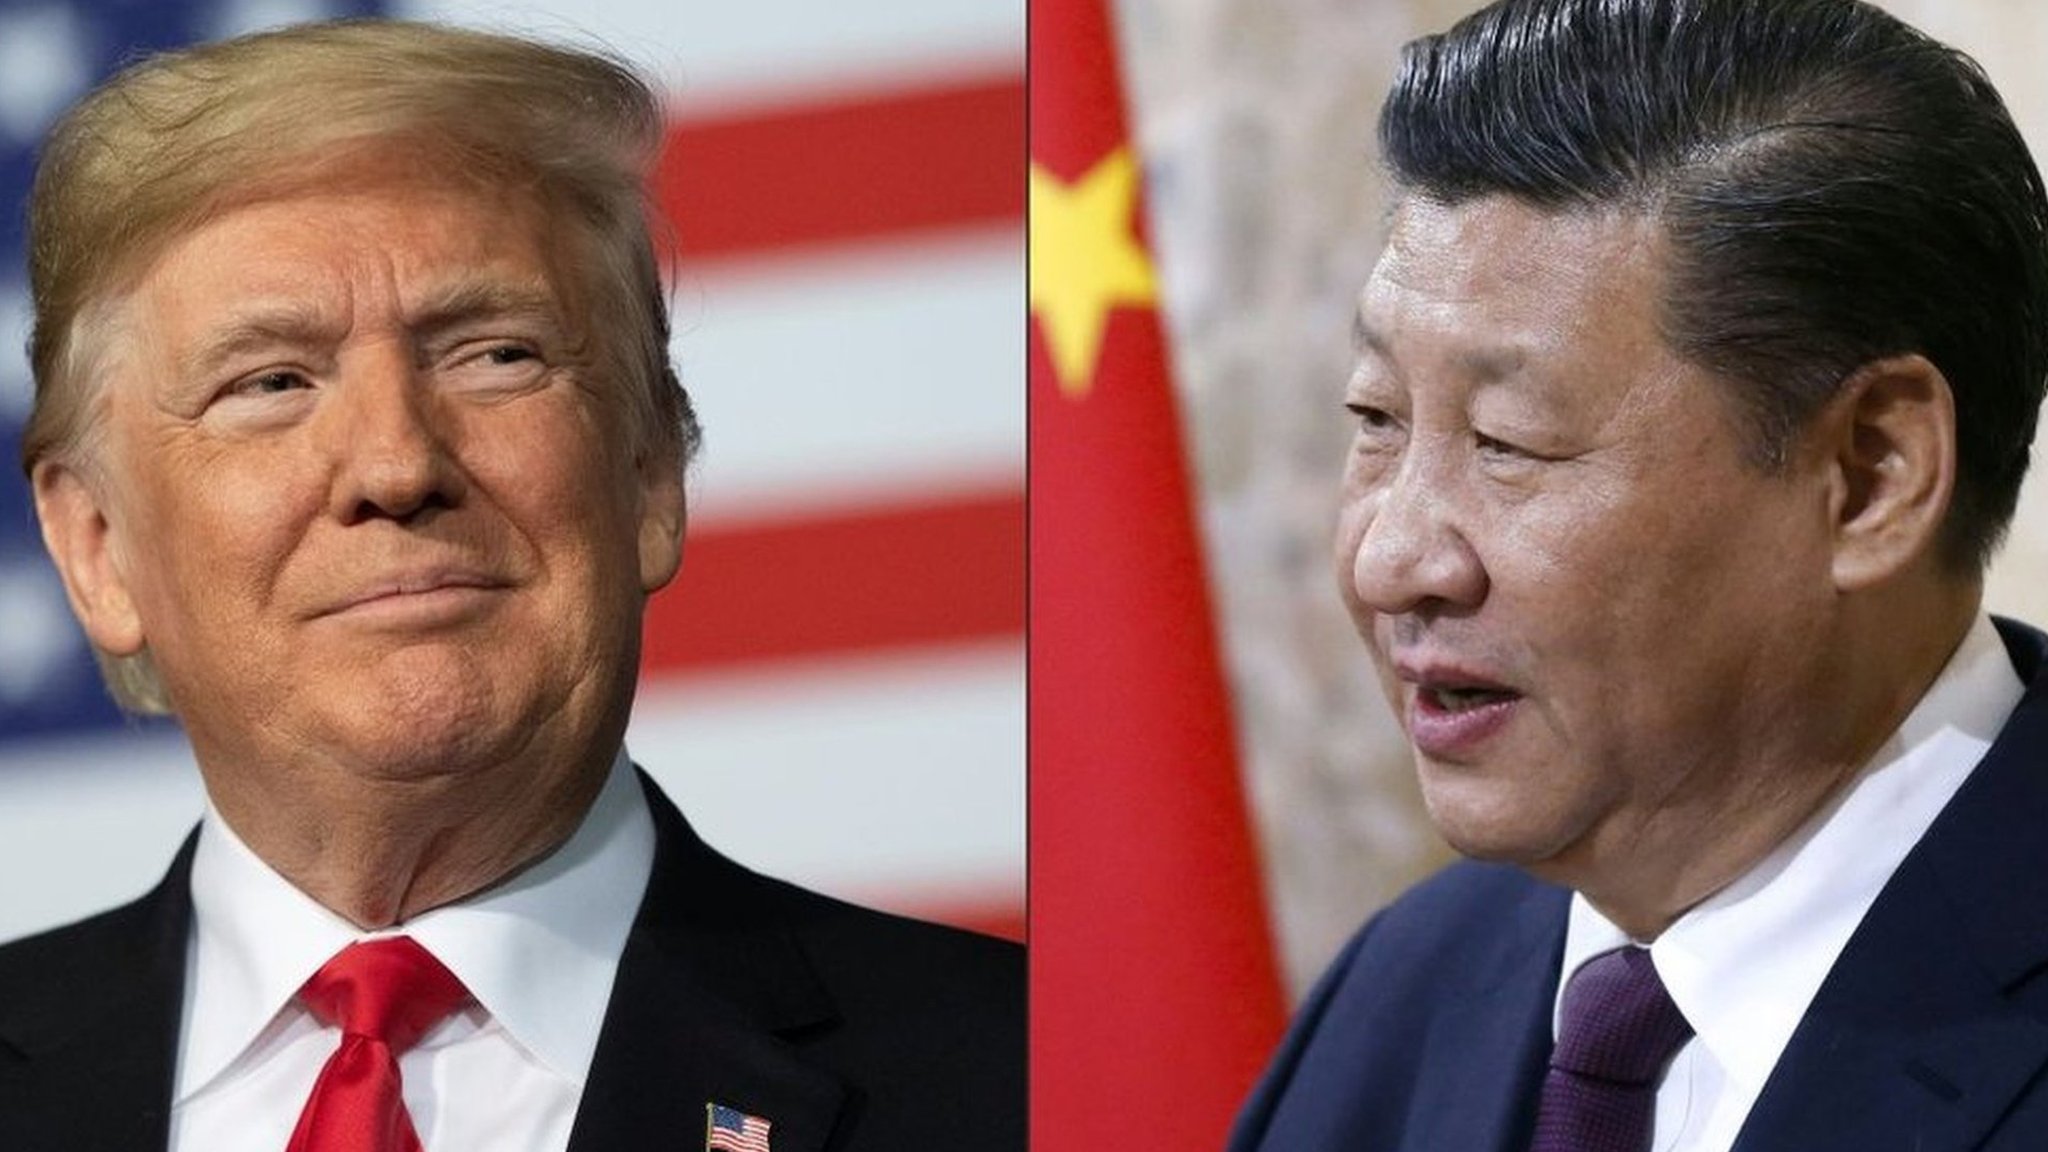 中国 と アメリカ 戦争